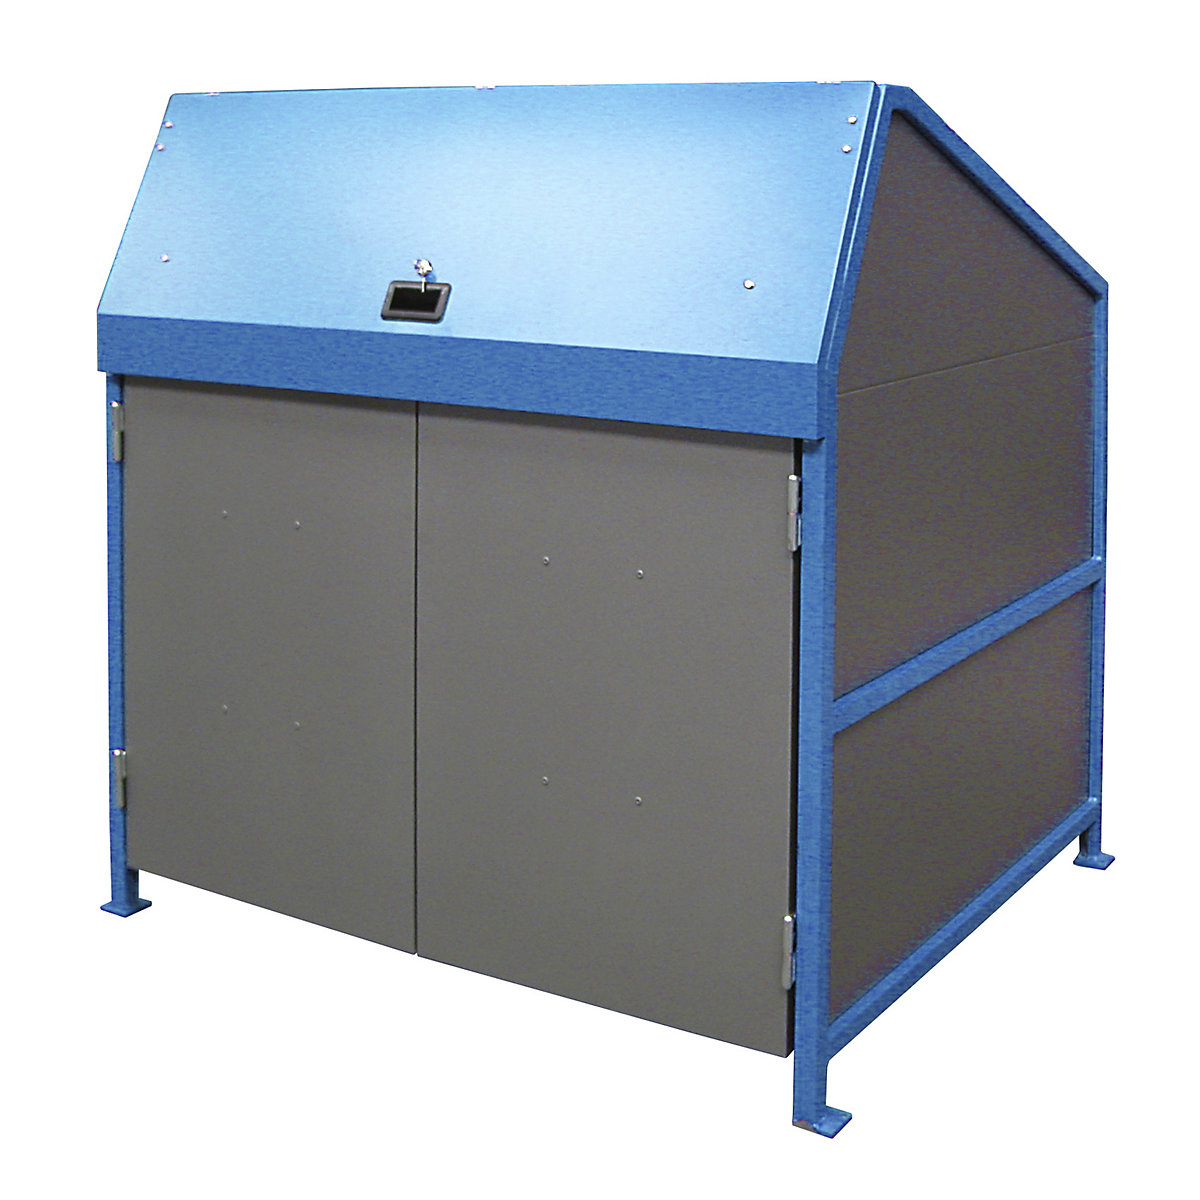 EUROKRAFTpro – Waste bin enclosures, enclosed on 4 sides, with doors, frame in blue